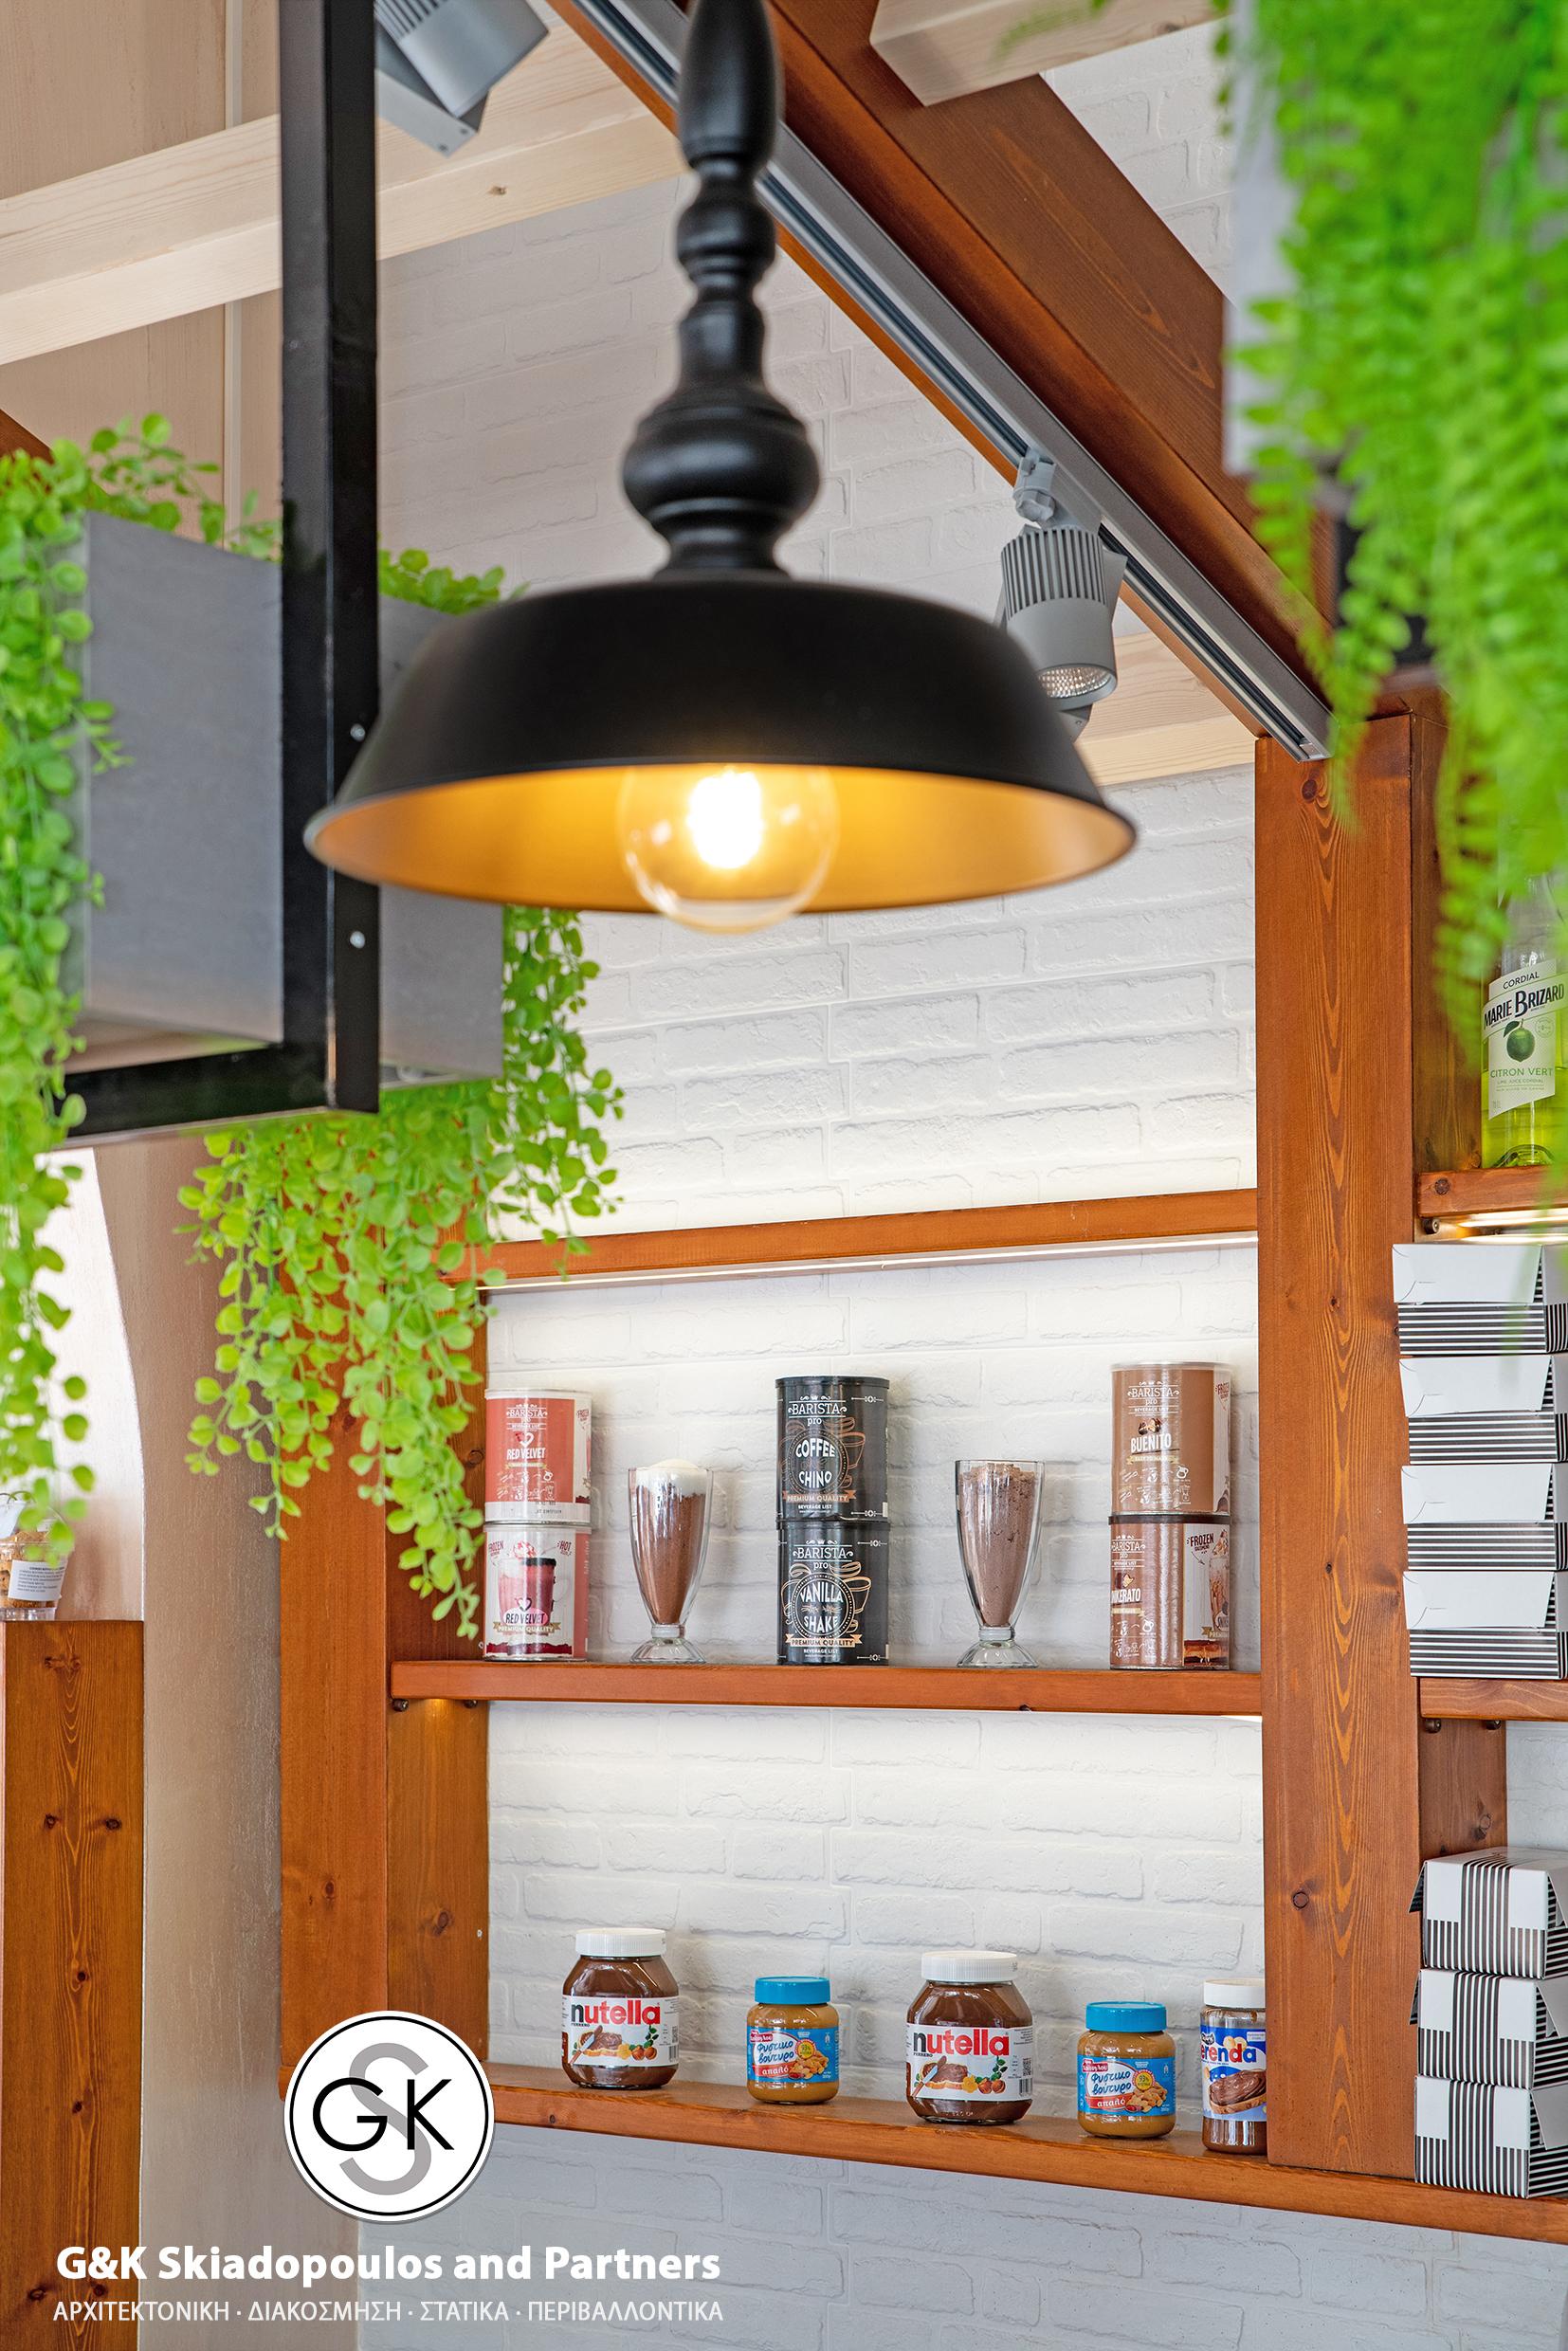 Sabroso Deli Cafe Interior Design - 3